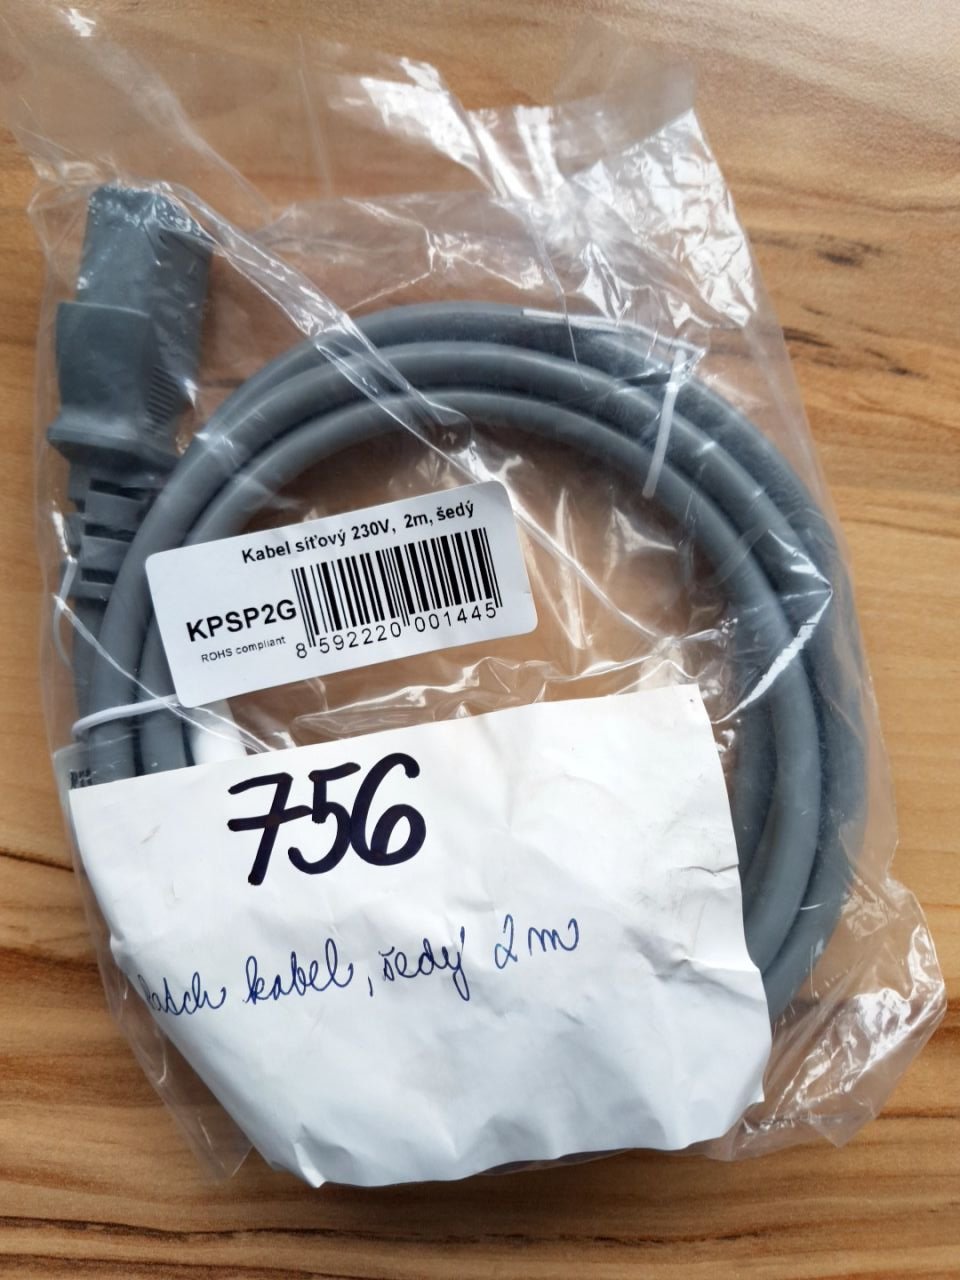 1x kabel síťový 230V, 2m, šedý